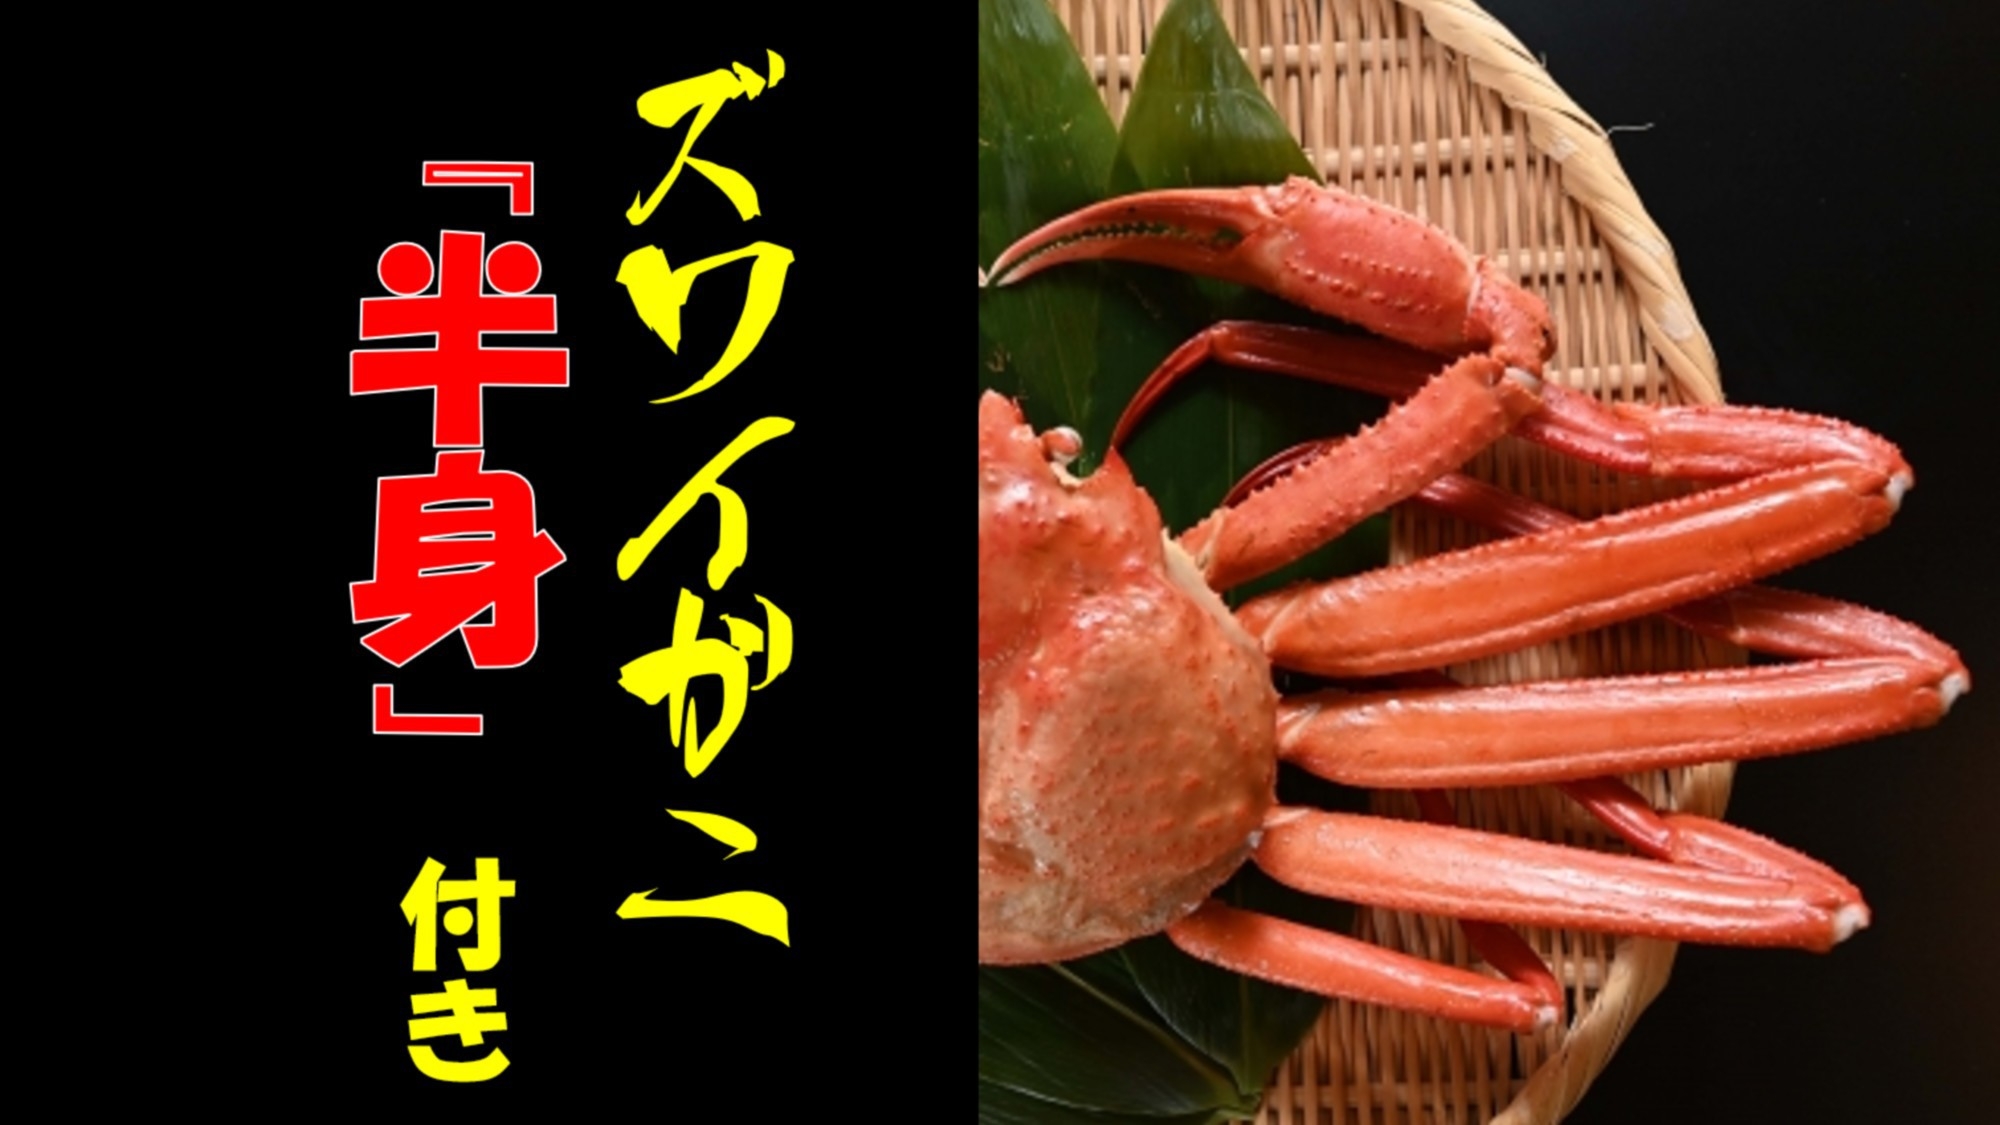 ★お料理グレードアップ編★ズワイガニ×福島牛×金目鯛の贅沢コースを堪能★もちろん地元の海鮮も♪